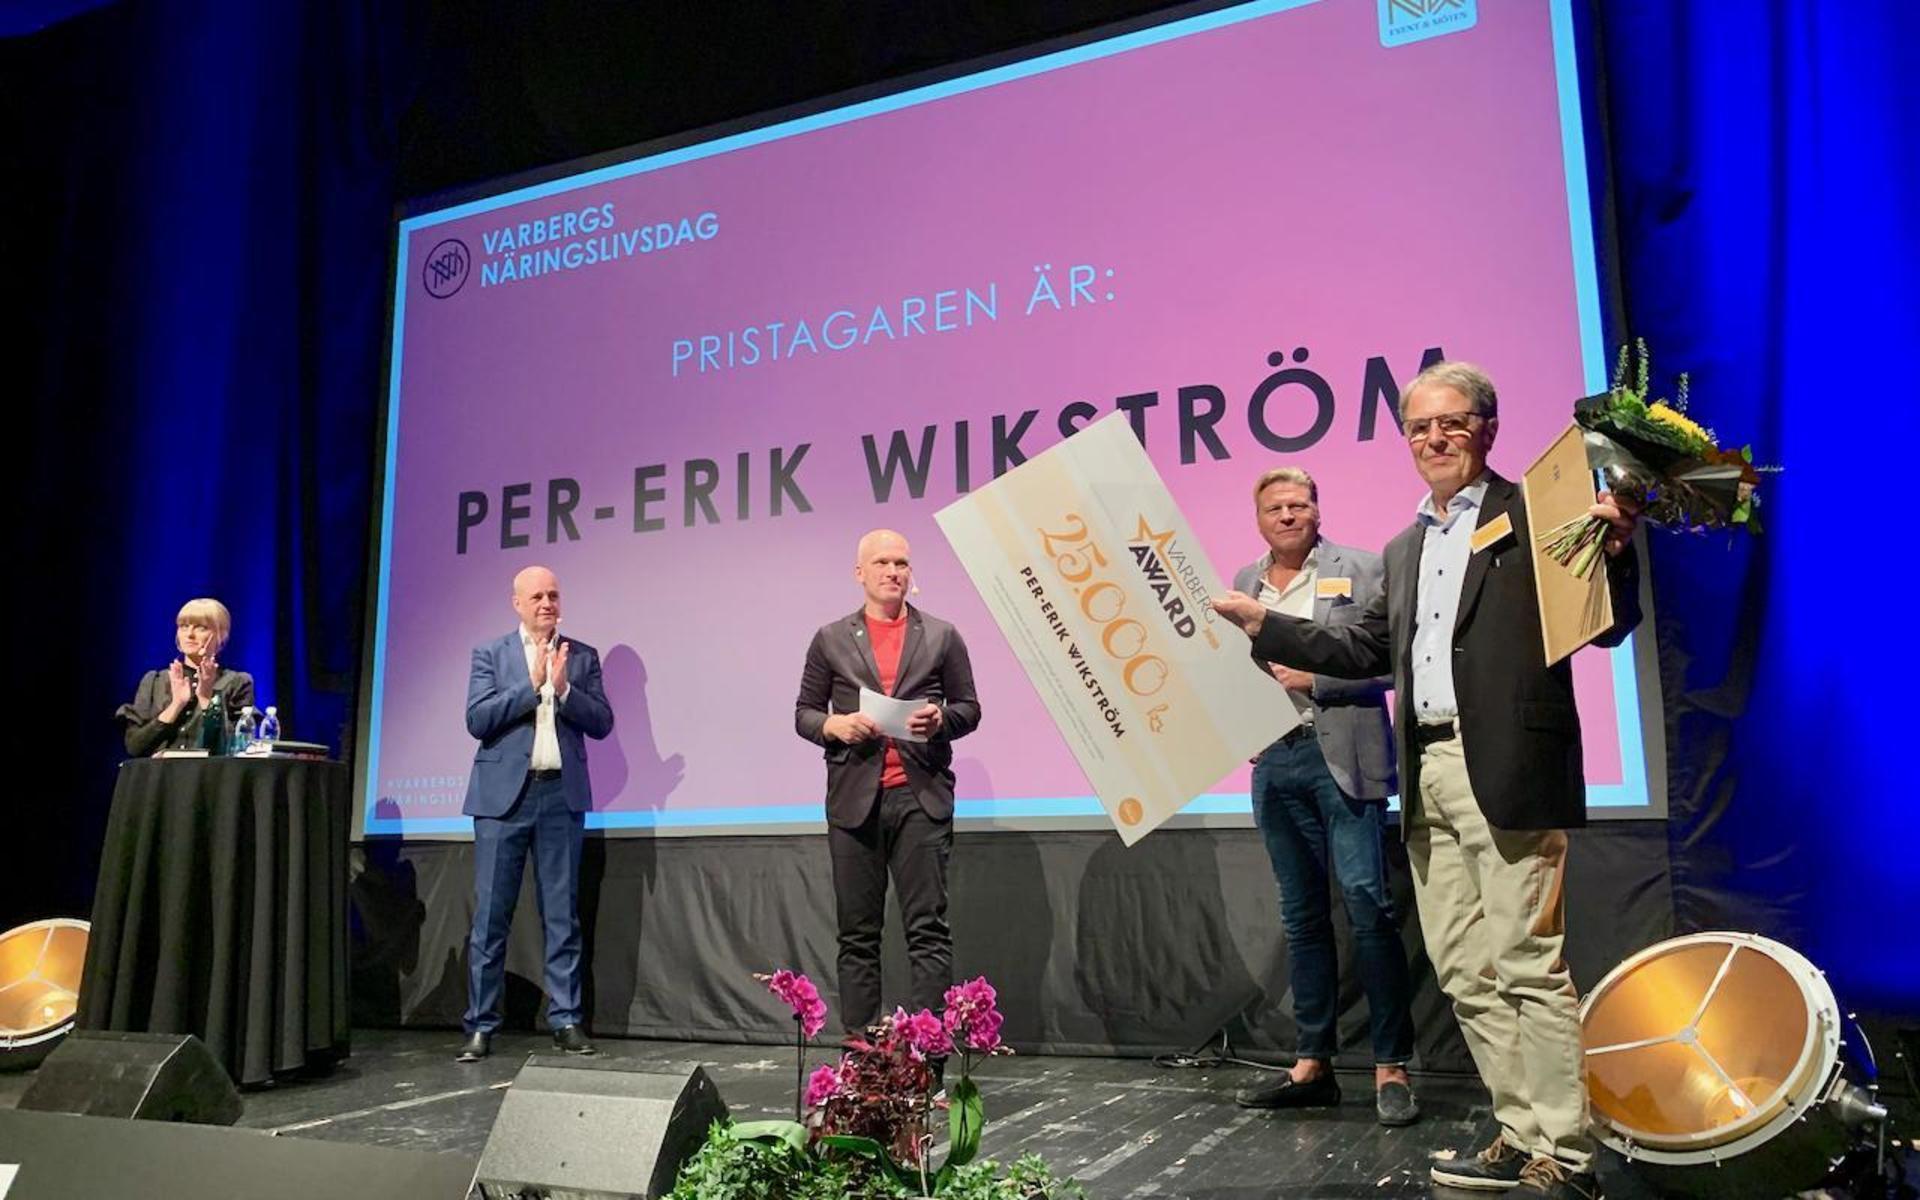 Per-Erik Wikström tar emot utmärkelsen Varberg Award 2020 av Varbergs Näringslivsförening. Föreningens ordförande Jonas Henricsson och före detta statsminister Fredrik Reinfeldt medverkade.